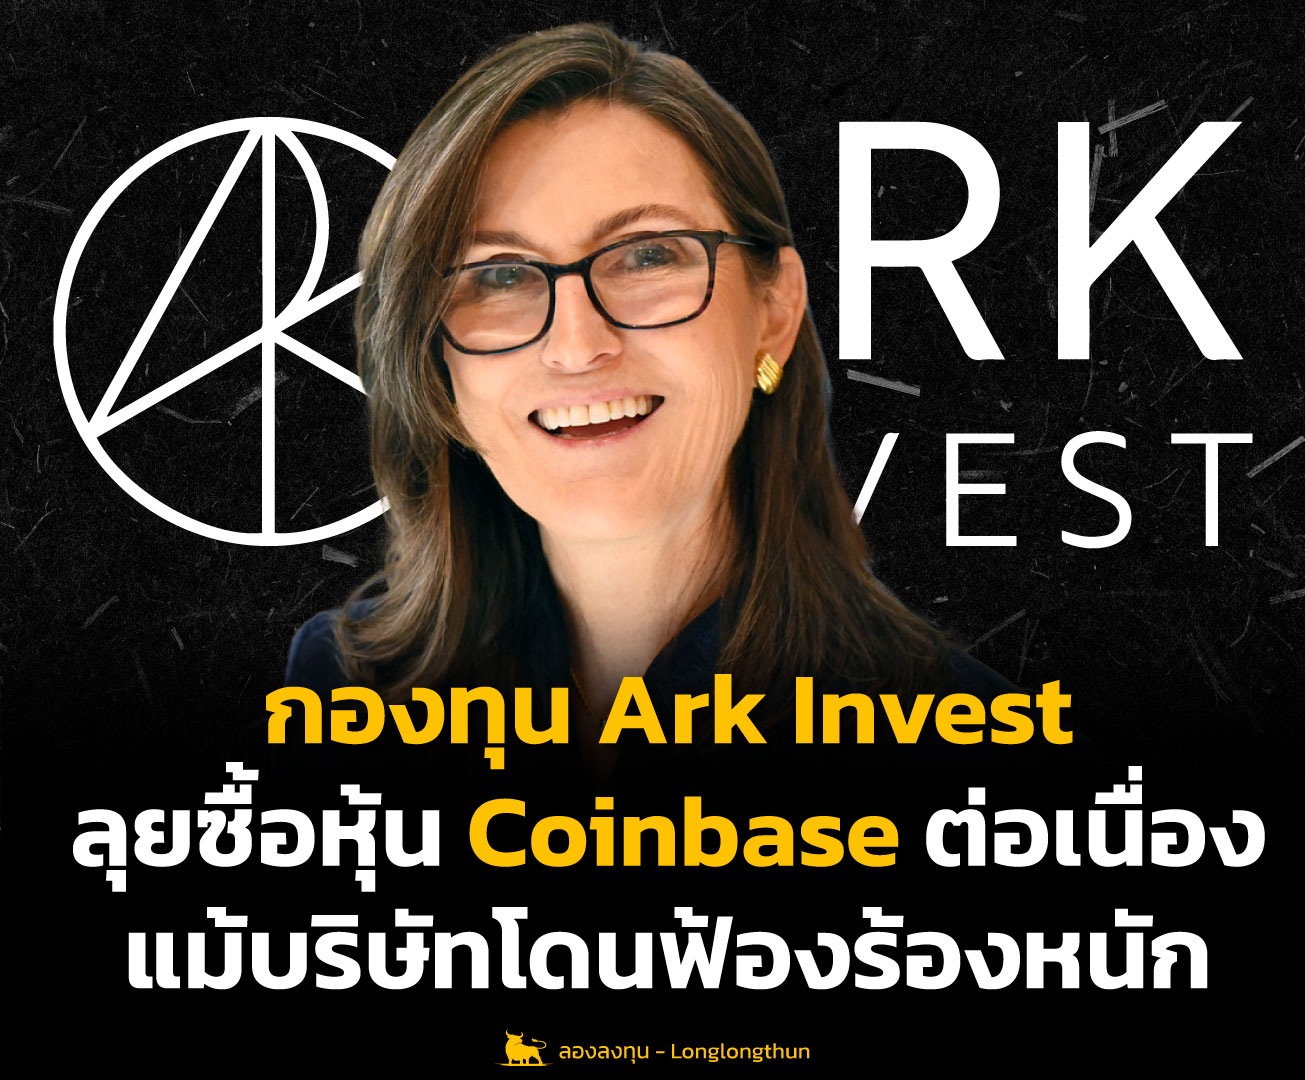 กองทุน Ark Invest ลุยซื้อหุ้น Coinbase ต่อเนื่อง แม้บริษัทโดนฟ้องร้องหนัก